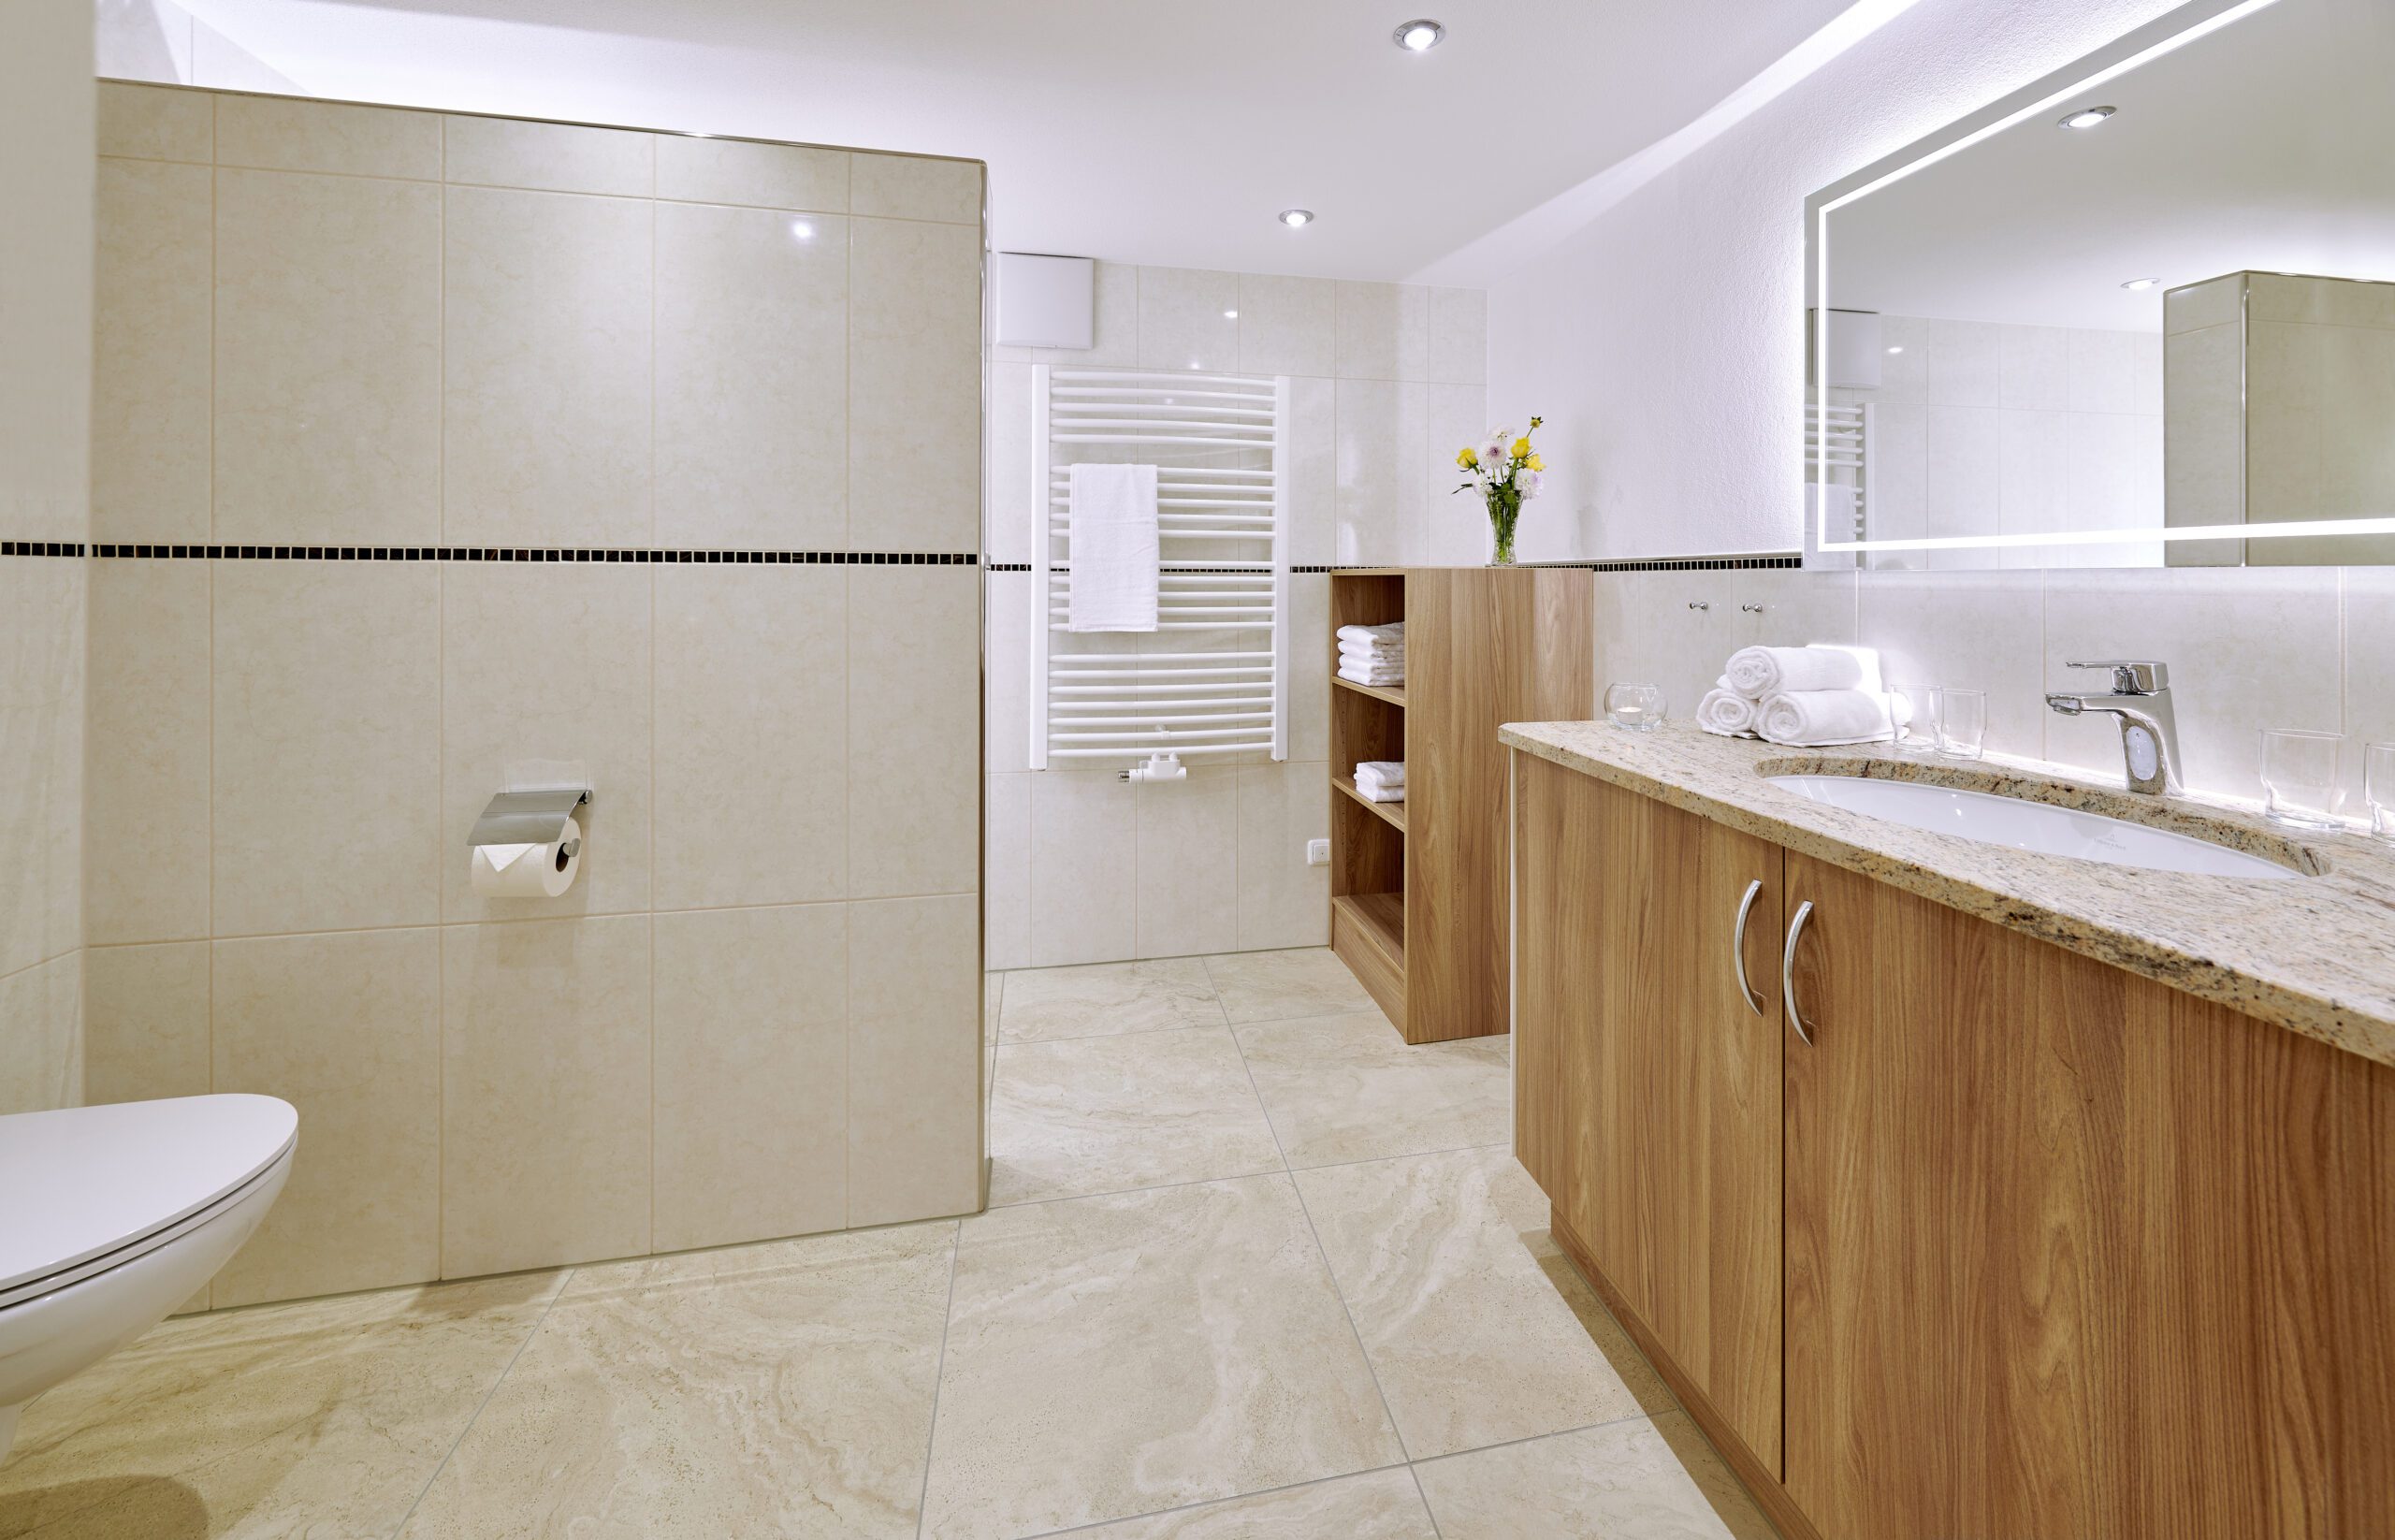 modernes badezimmer mit begehbarer dusche, bodenfliesen sind beige und die wandfliesen sind glaenzend-weiss, der waschtisch ist aus beige-melierten granit